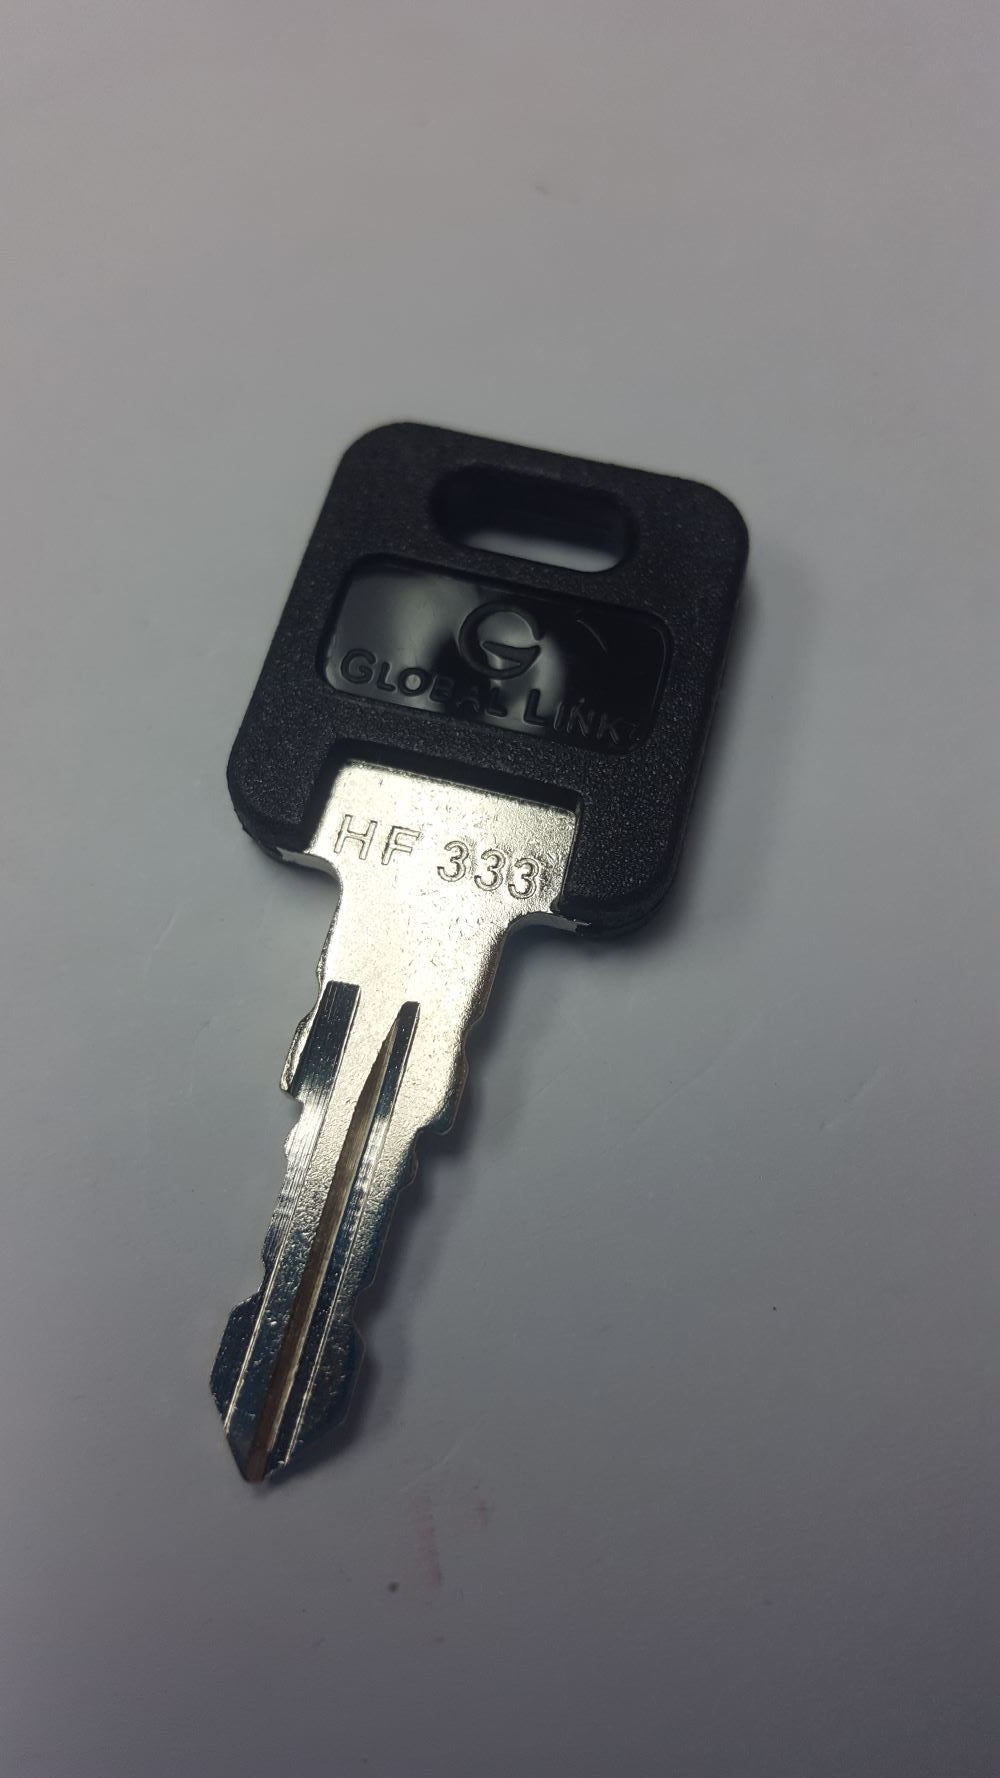 CPG KEY-HF-333 Pre-cut Stamped FIC Replacemnt HF333 Key